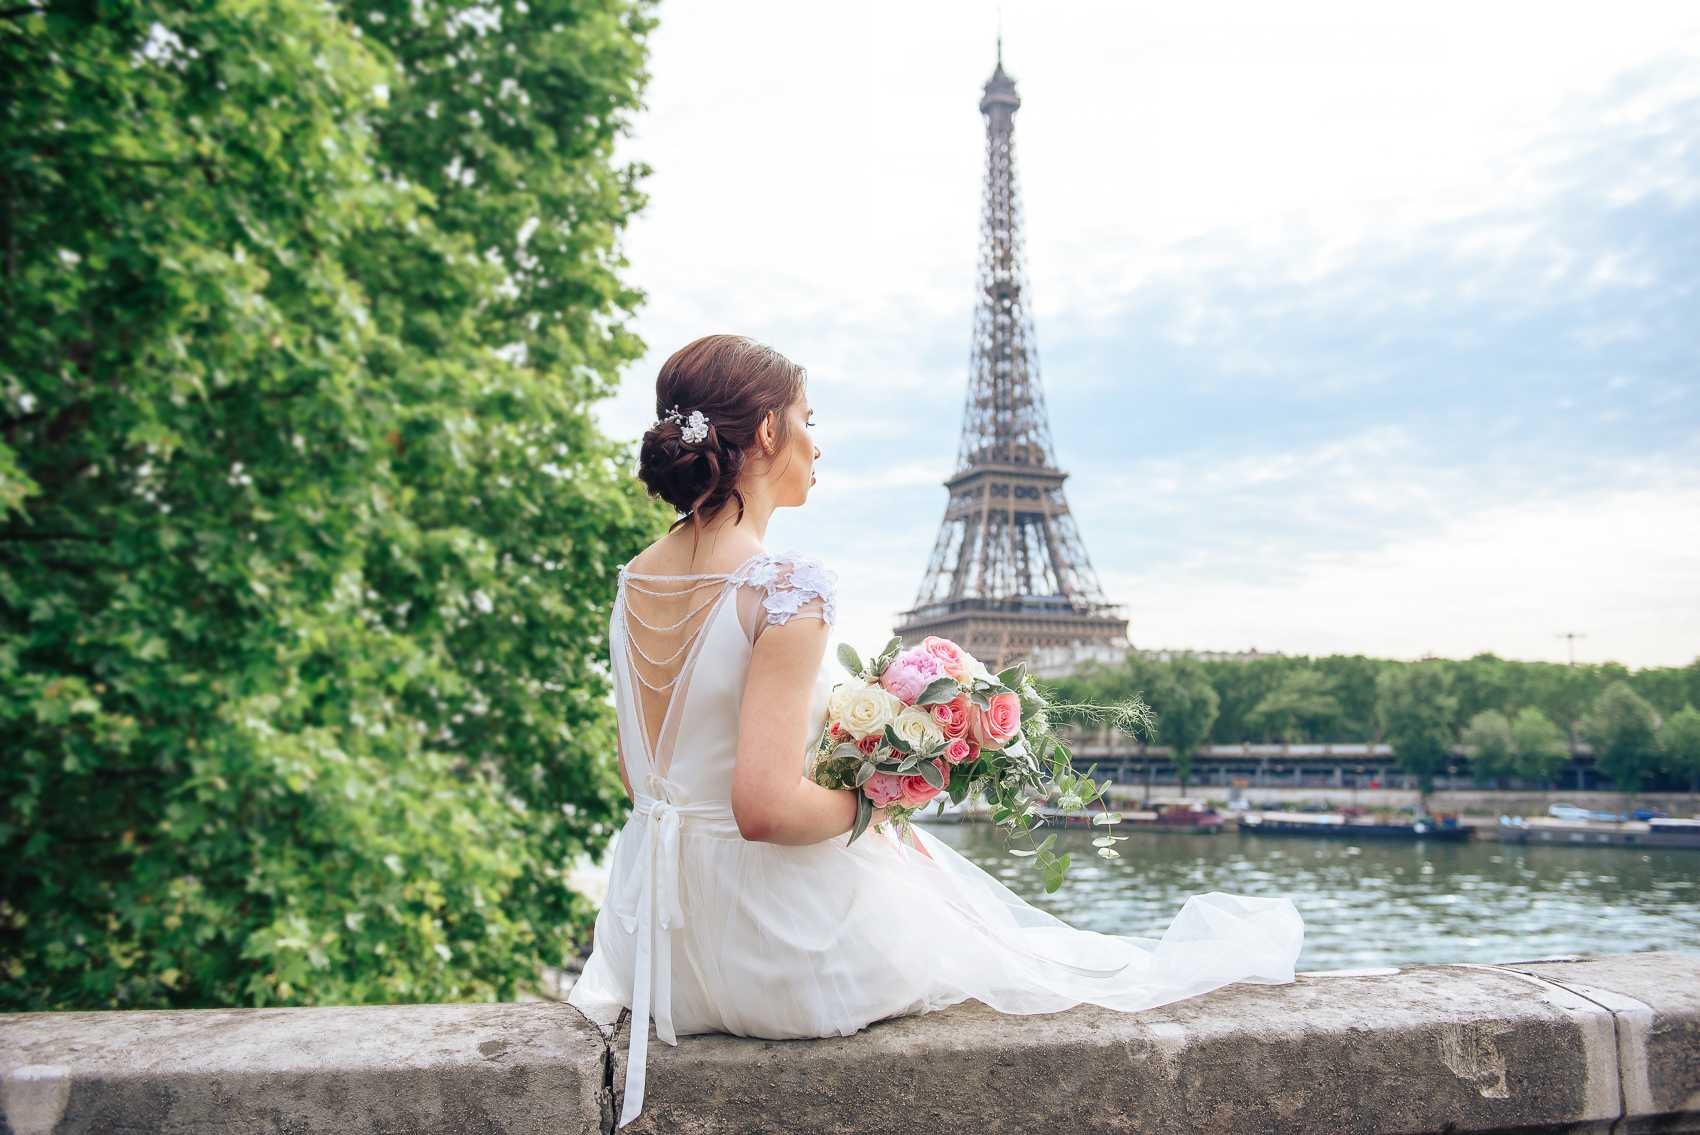 Свадьба в стиле Париж: идеи оформления образ жениха и невесты фото и видео